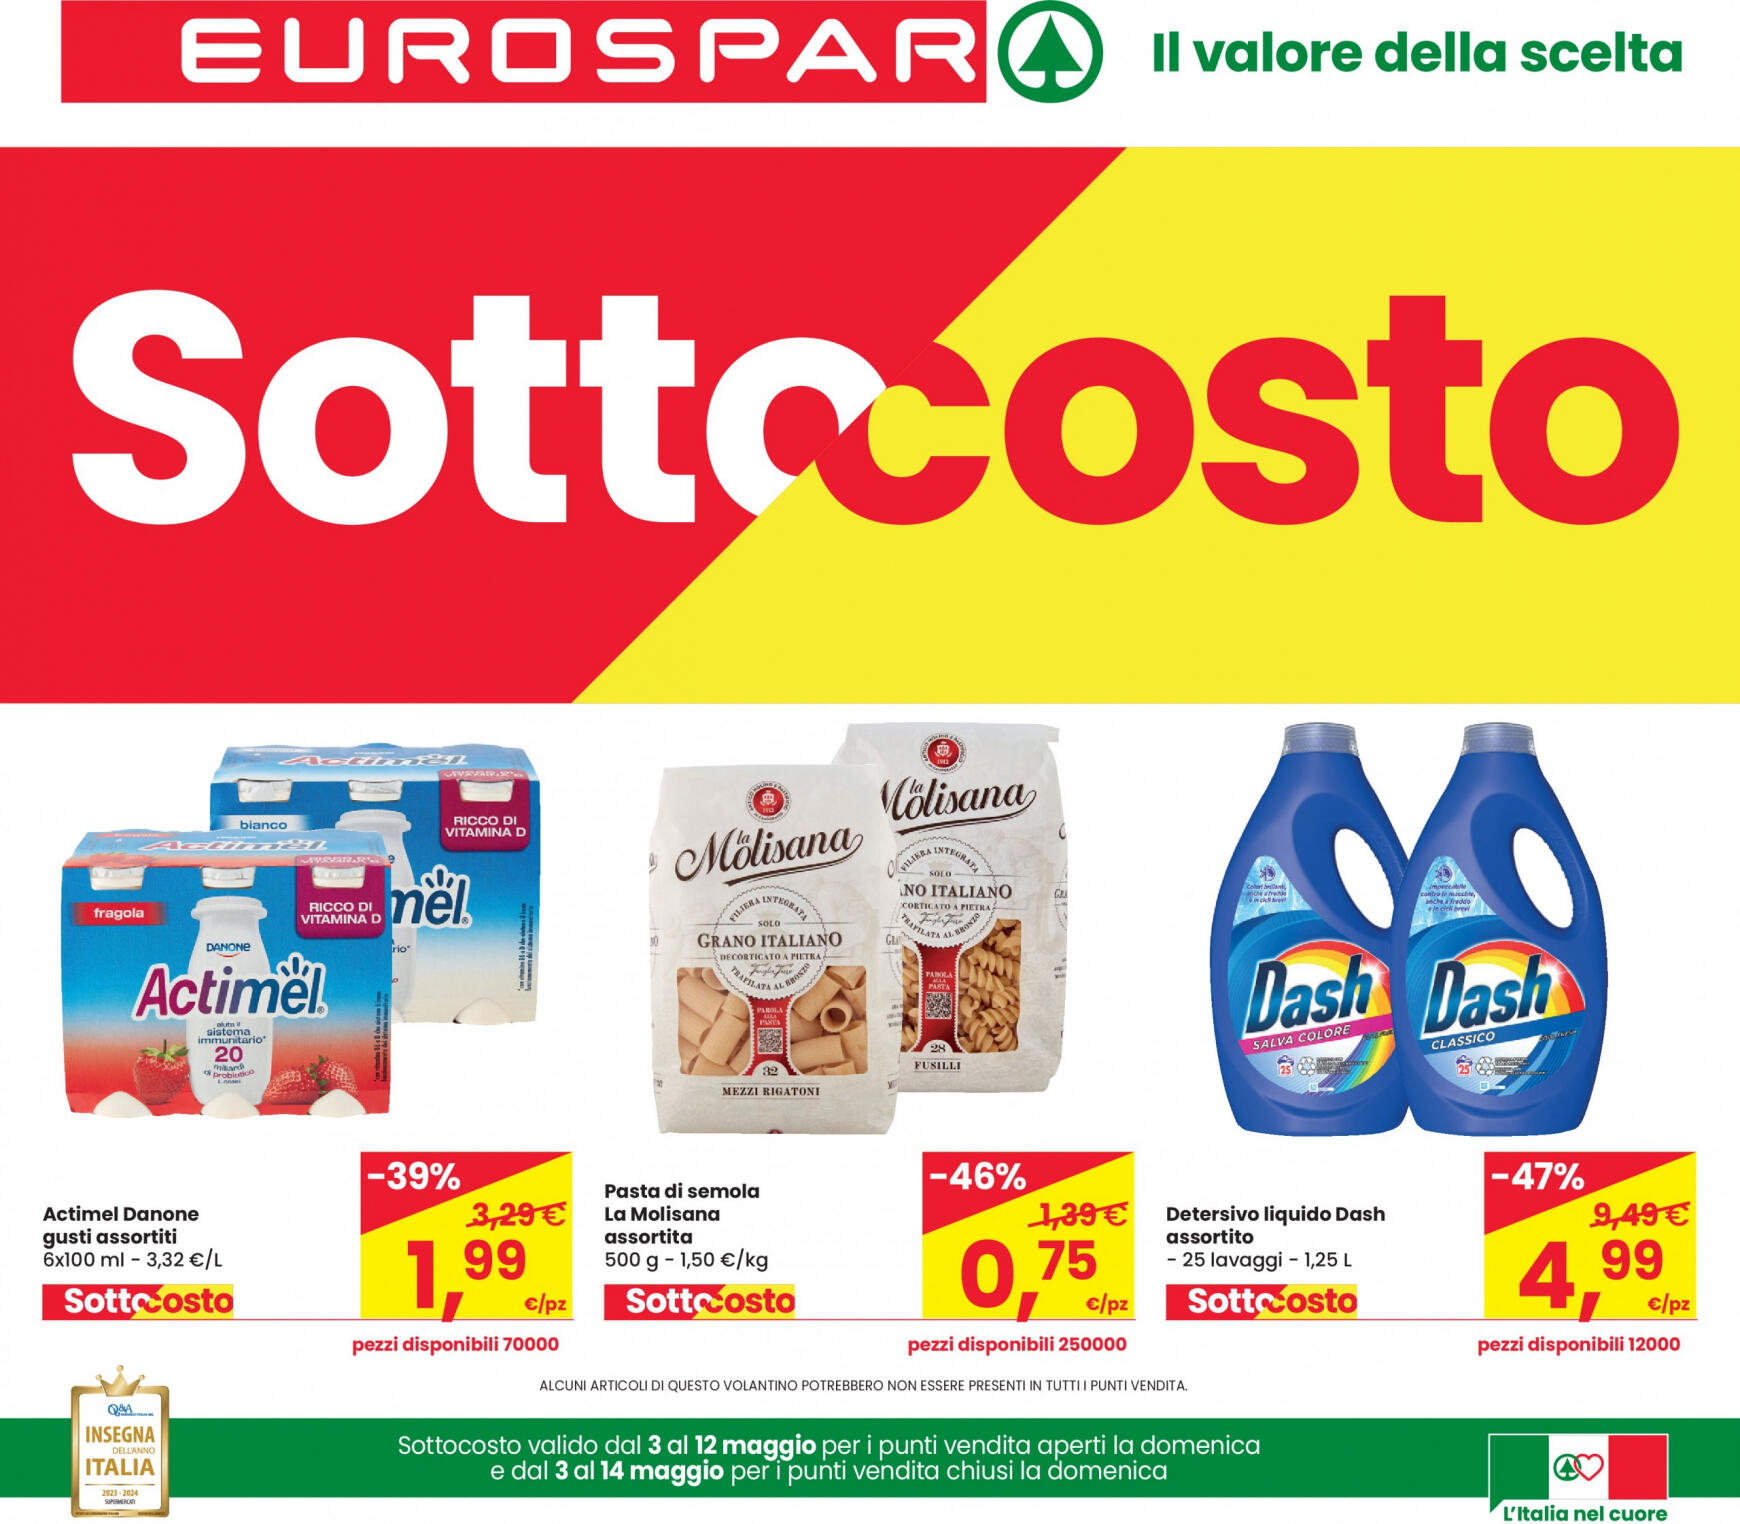 eurospar - Nuovo volantino Eurospar 03.05. - 15.05.